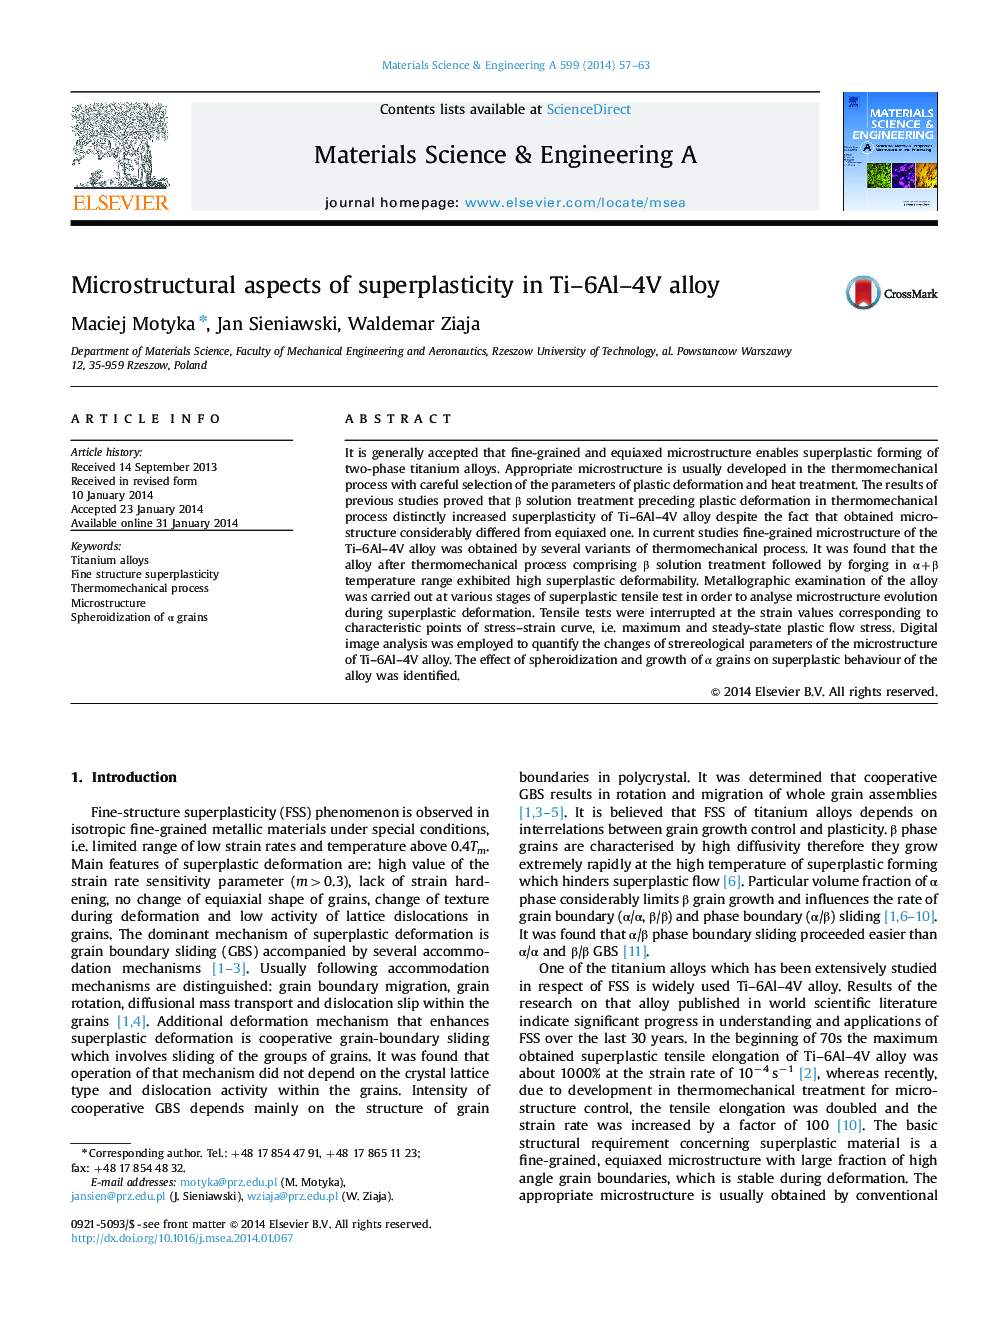 Microstructural aspects of superplasticity in Ti-6Al-4V alloy